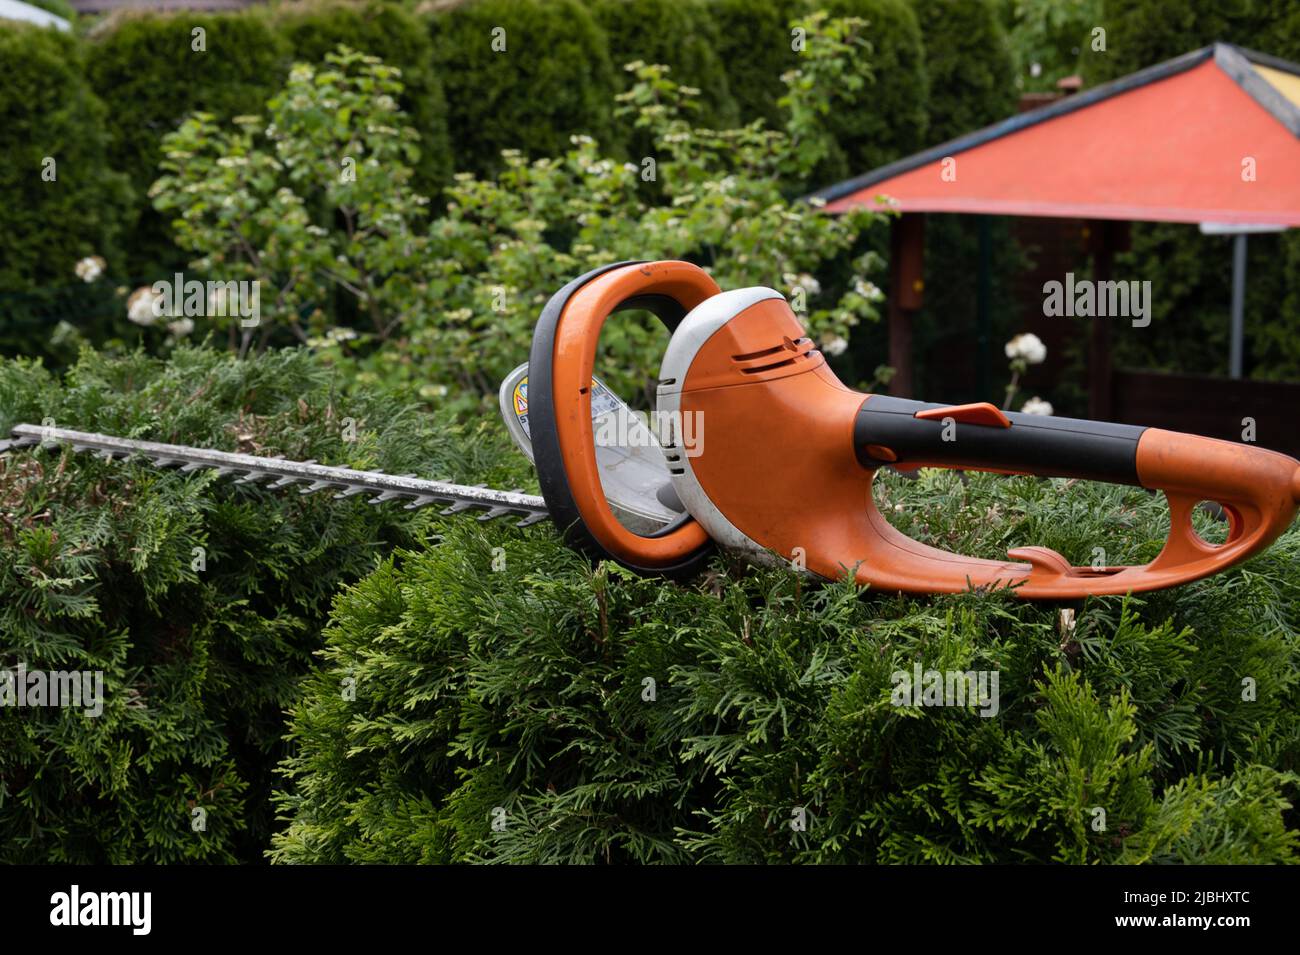 Schöne grüne Thuja im Garten mit einer elektrischen Heckensäge trimmen.  Heckenschnitt mit einer professionellen Langmessersäge Stockfotografie -  Alamy